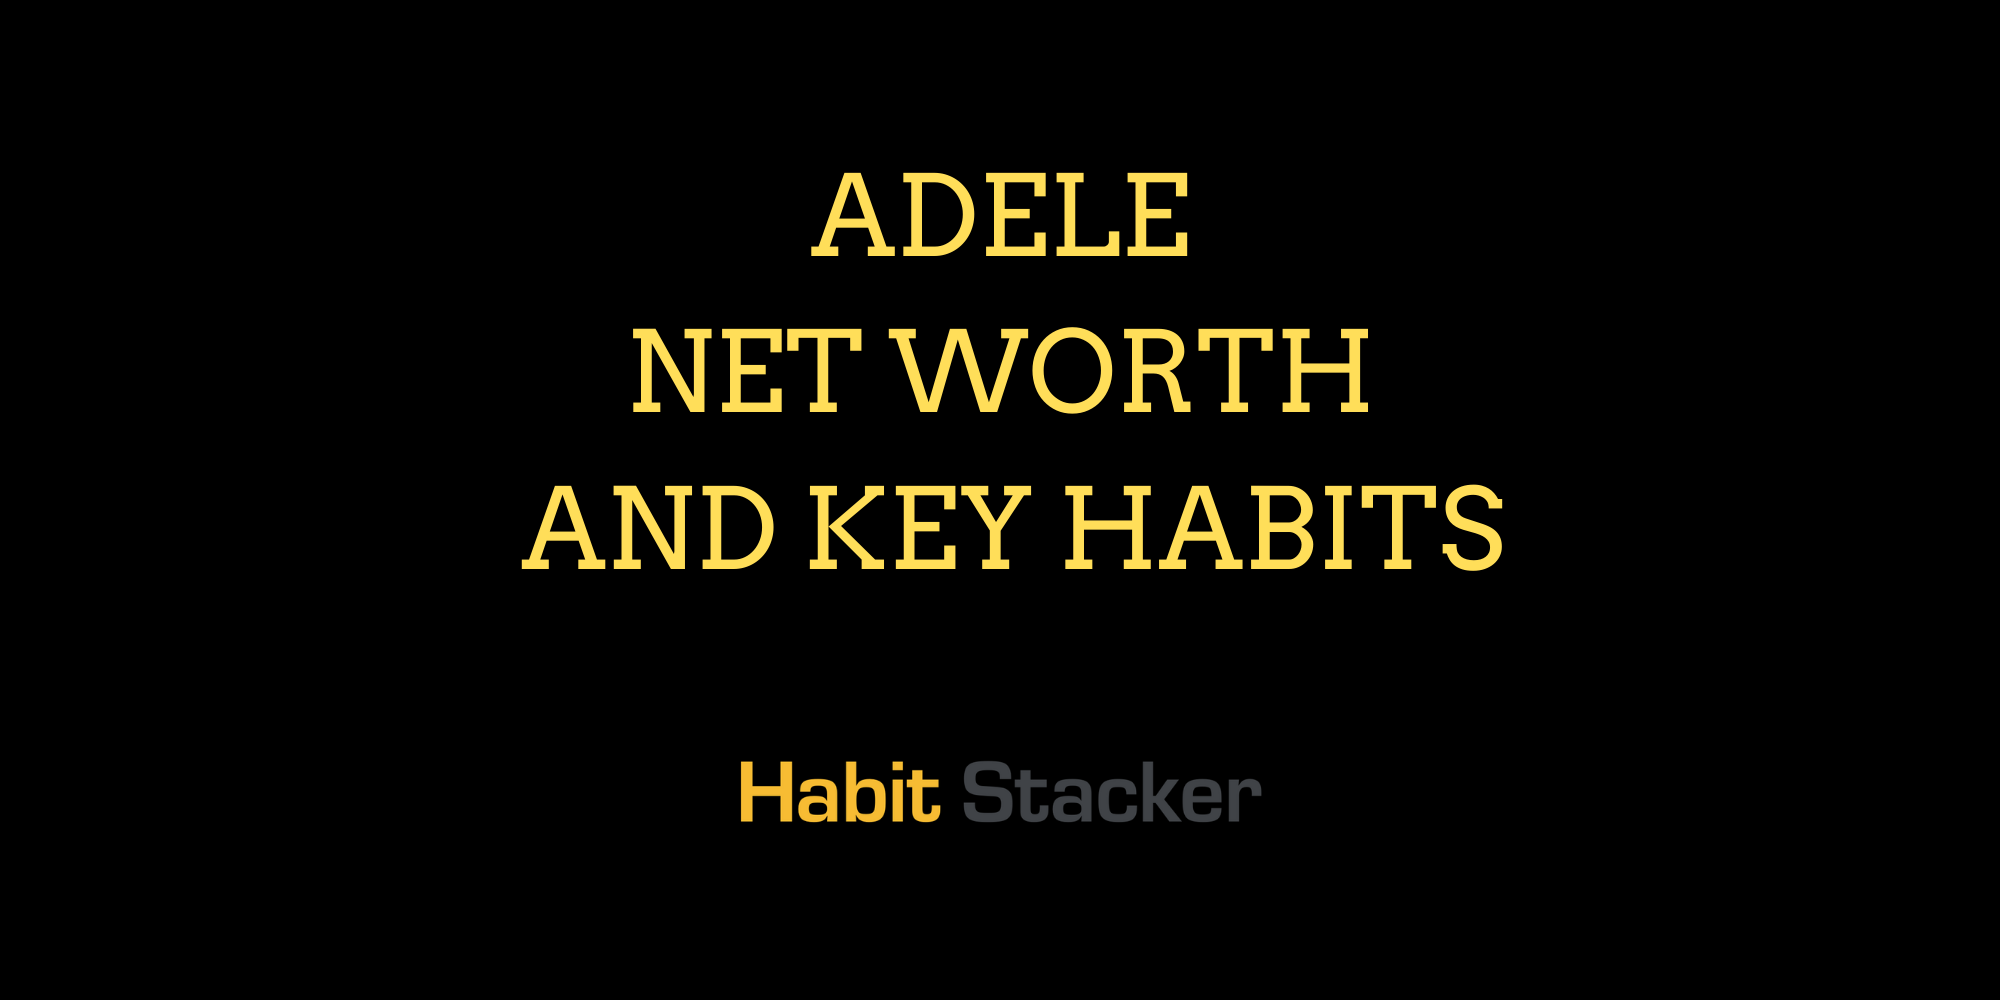 Adele Net Worth and Key Habits